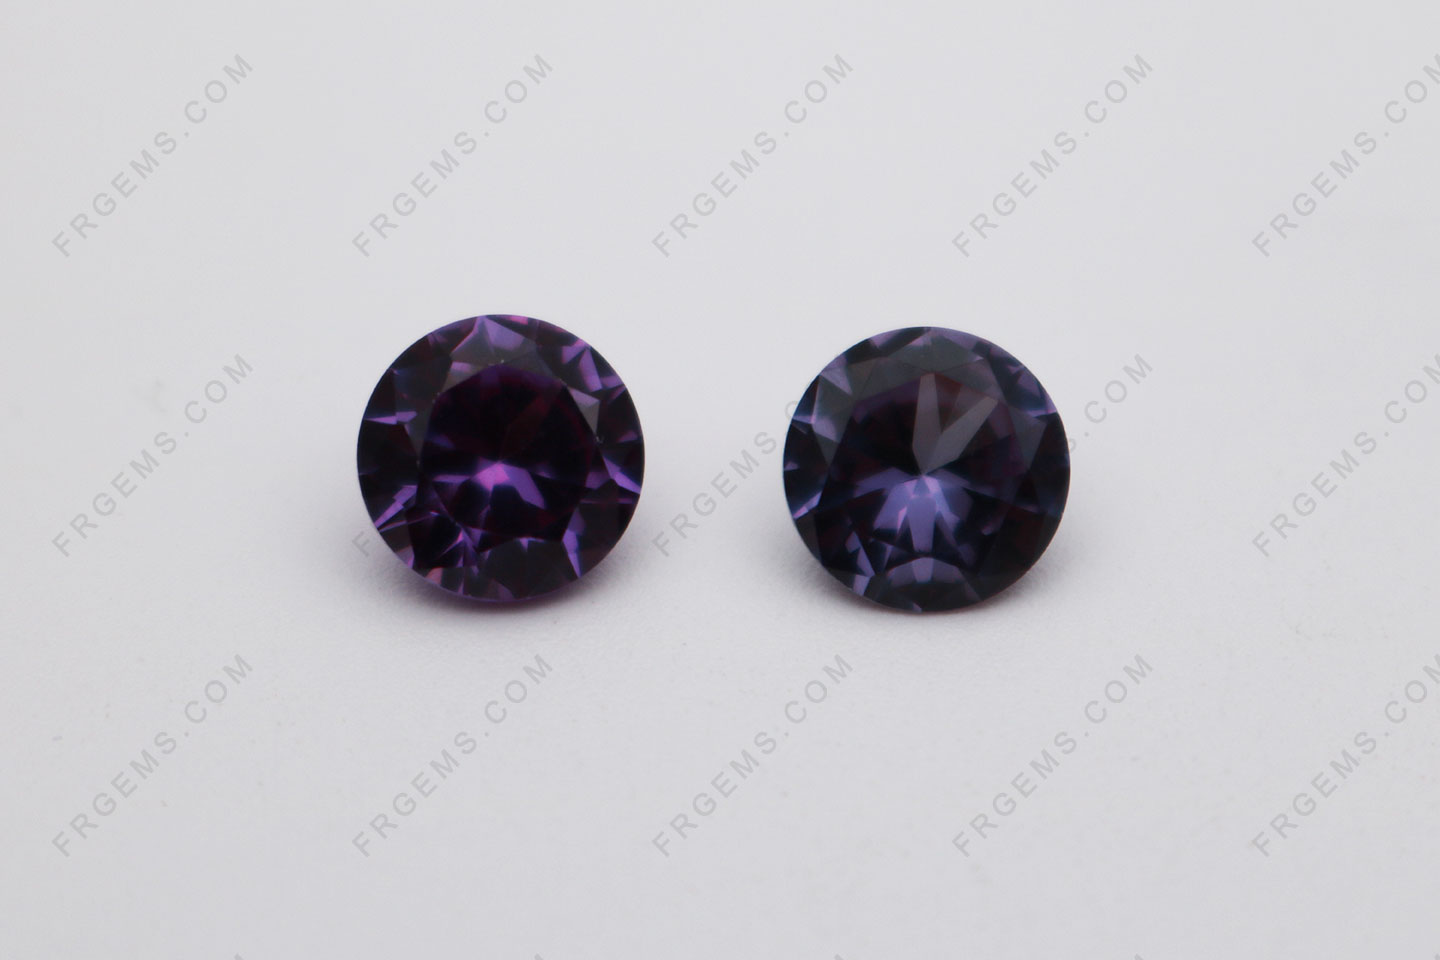 Details about   Mix Shape 500Ct./6 Pcs Color Changing Alexandrite Loose Gemstones Lot Mix Shapes 